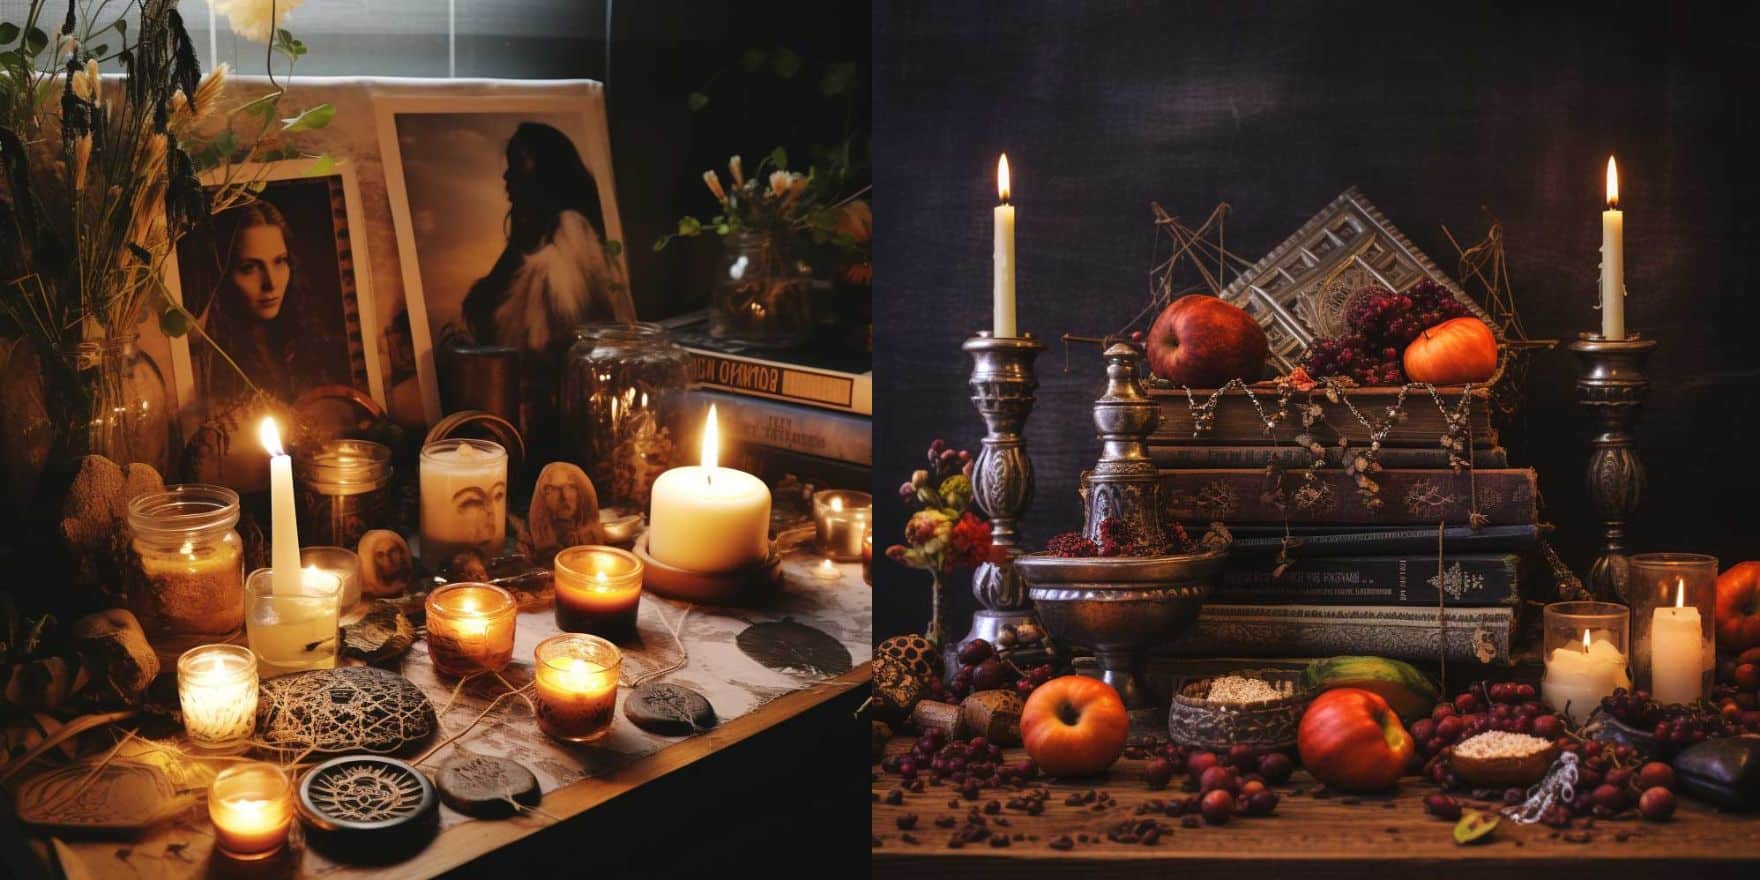 How To Setup A Samhain Altar [With Photos]